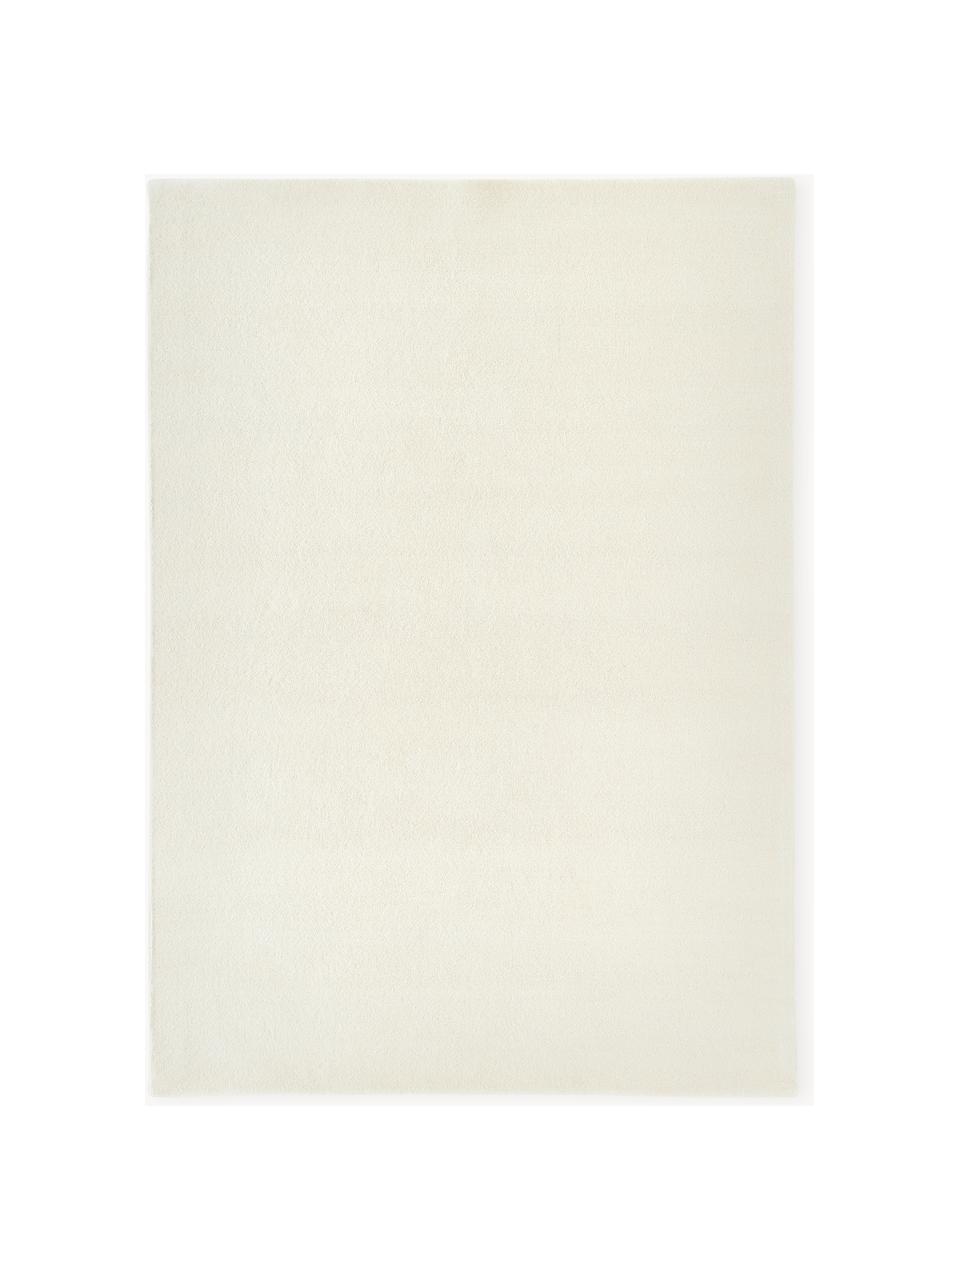 Handgetuft laagpolig wollen vloerkleed Ezra, Onderzijde: 70% katoen, 30% polyester, Crèmewit, B 160 x L 230 cm (maat M)